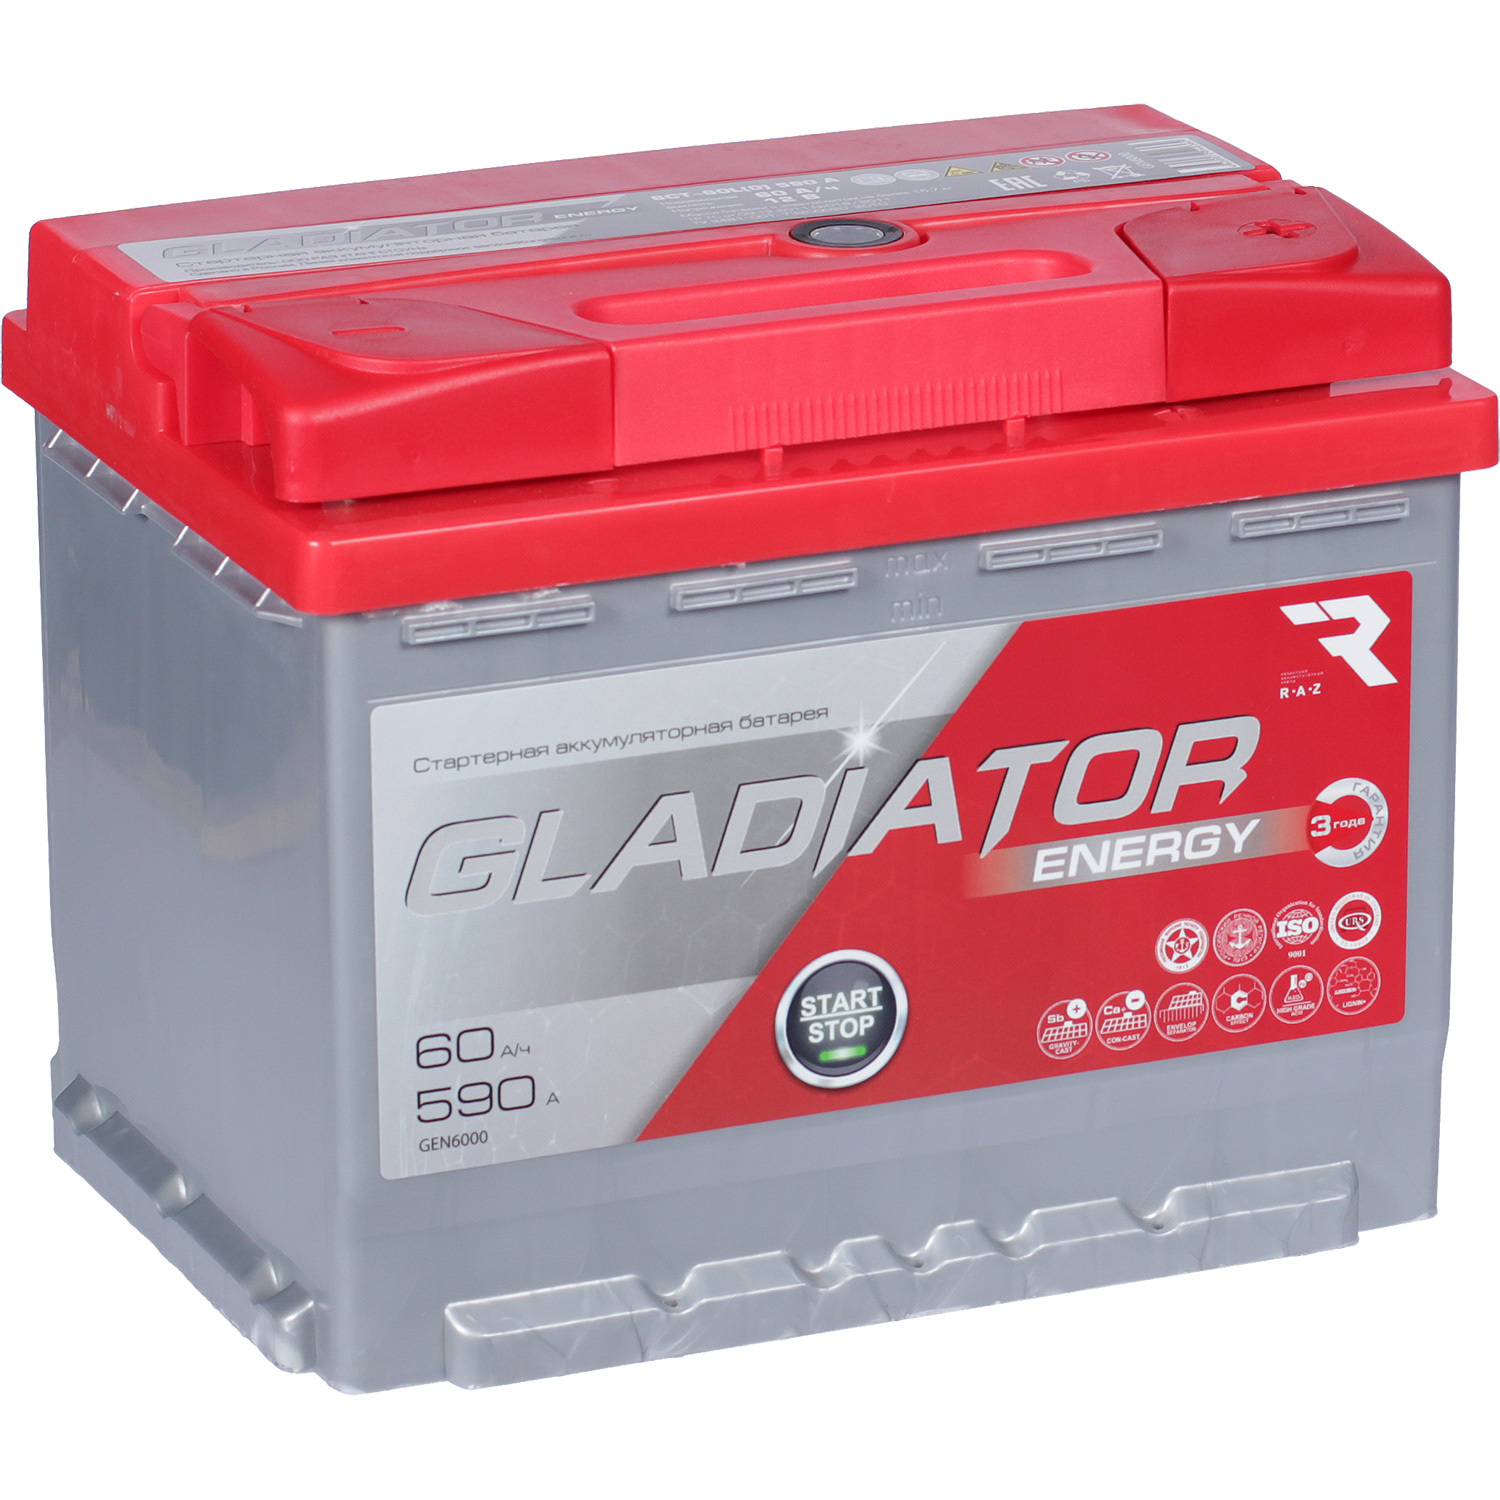 Gladiator Автомобильный аккумулятор Gladiator 60 Ач обратная полярность L2